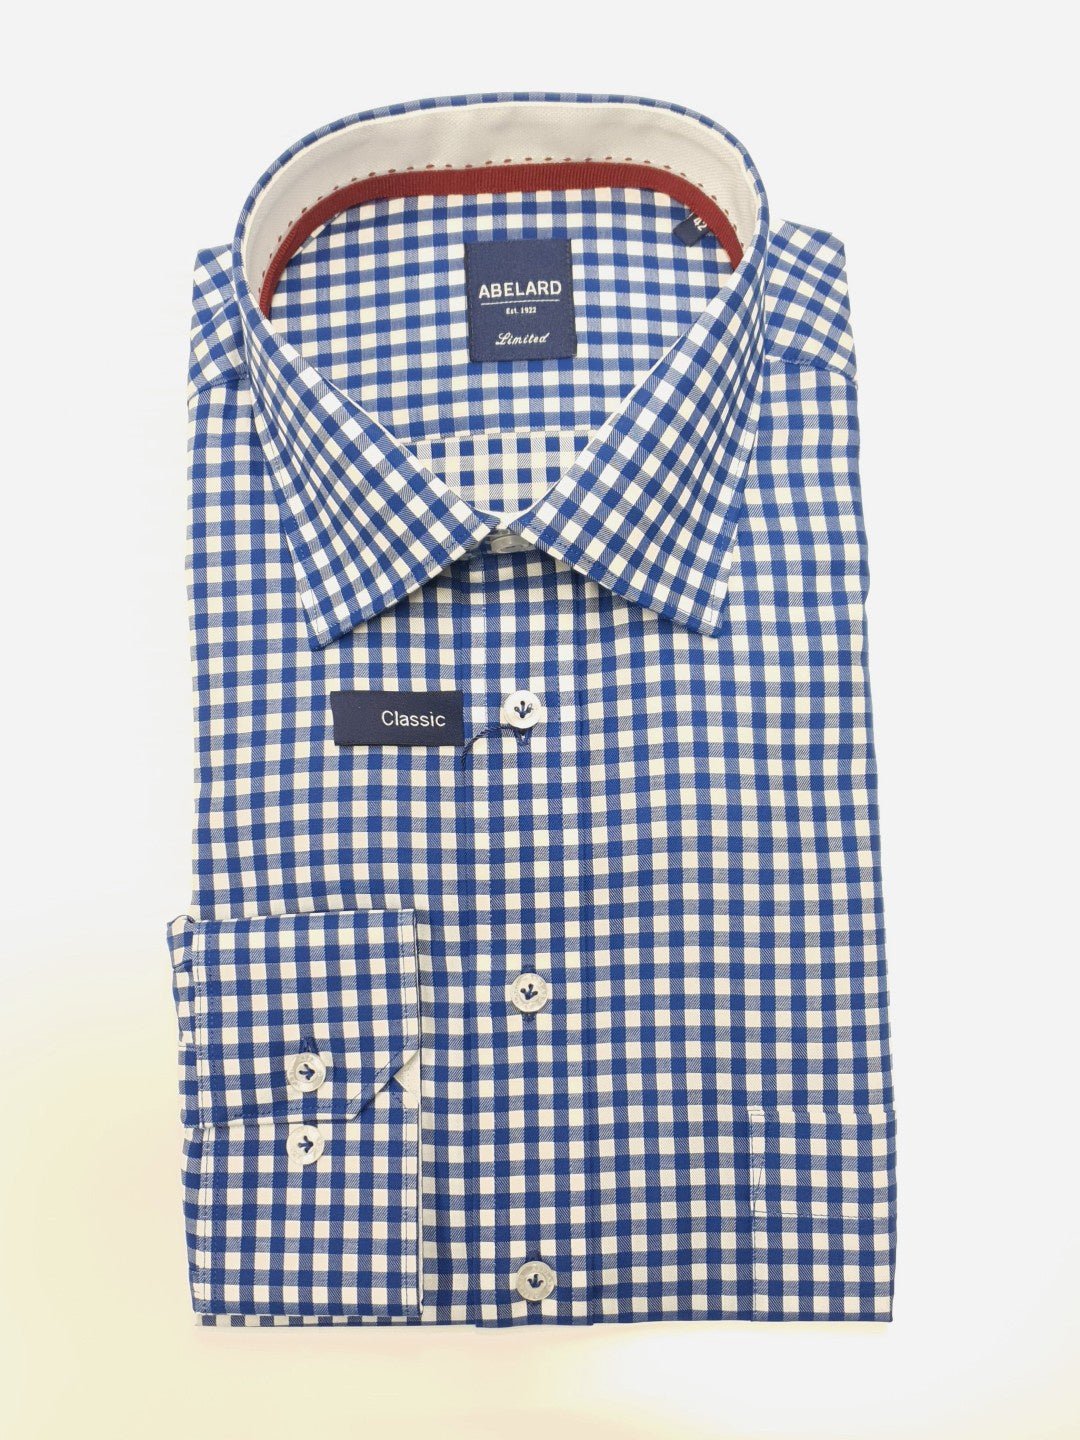 Abelard S22 Punchy Check Shirt - Thomson's Suits Ltd - Cobalt - 40 - 64027